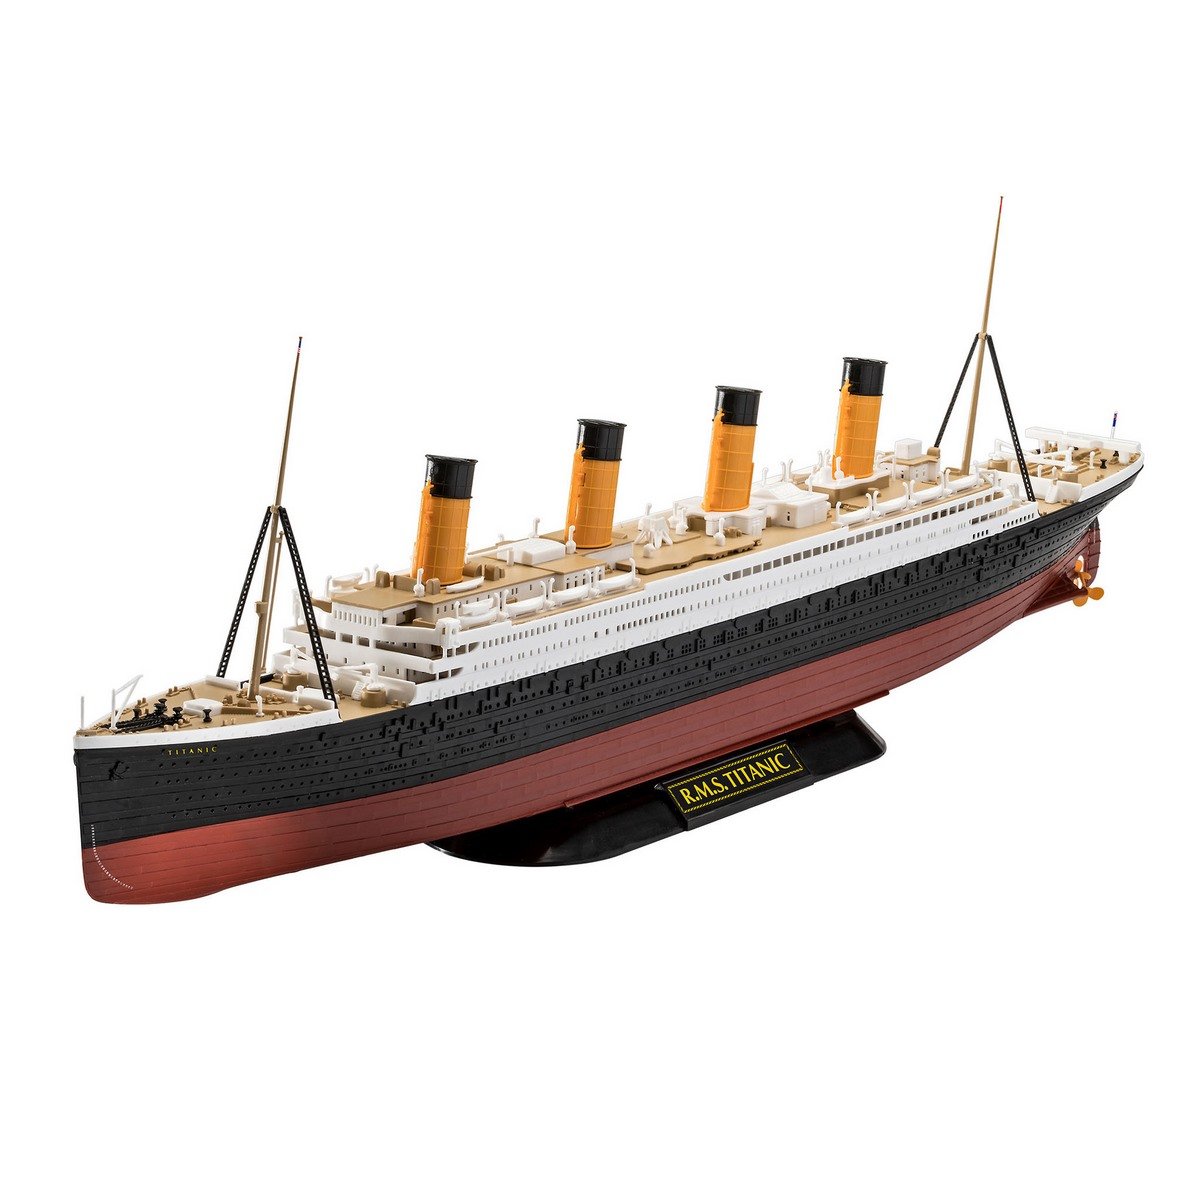 Modèle Kids@Play Revell de Allemagne RMS Titanic Maquette en Plastique 80-5210 Jouets & Jeu 